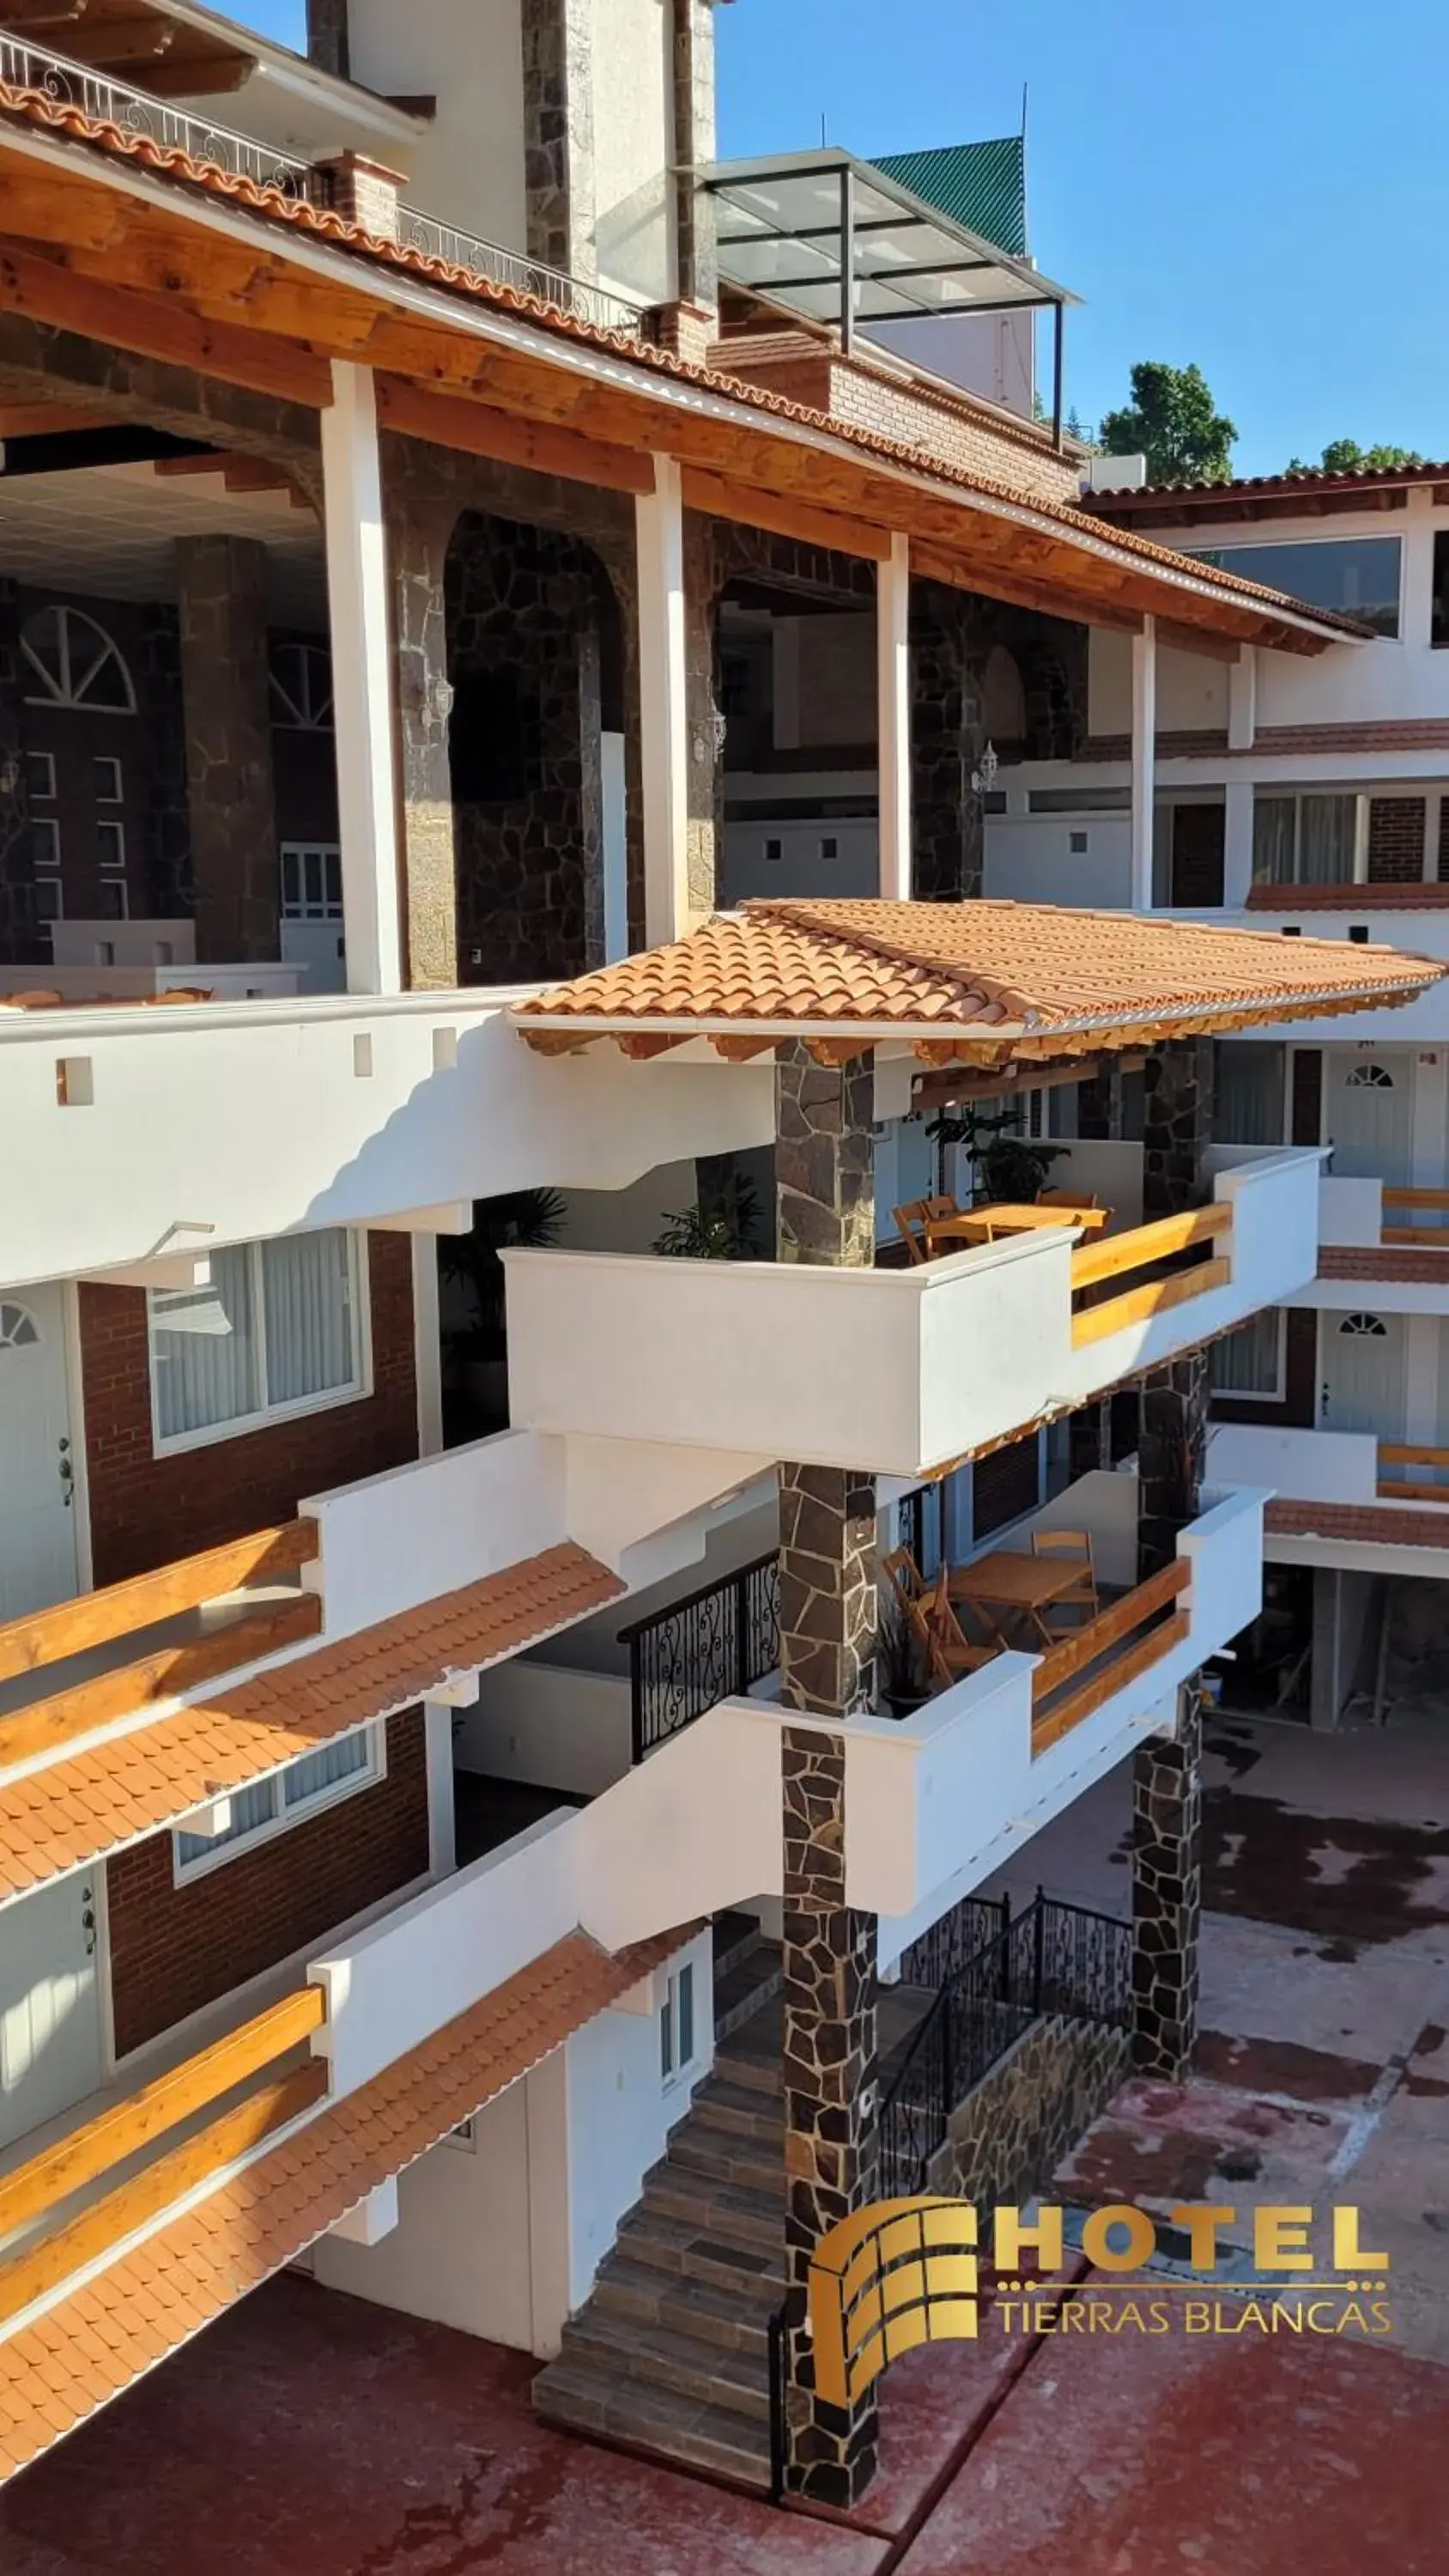 Balcony/Terrace in Hotel Tierras Blancas